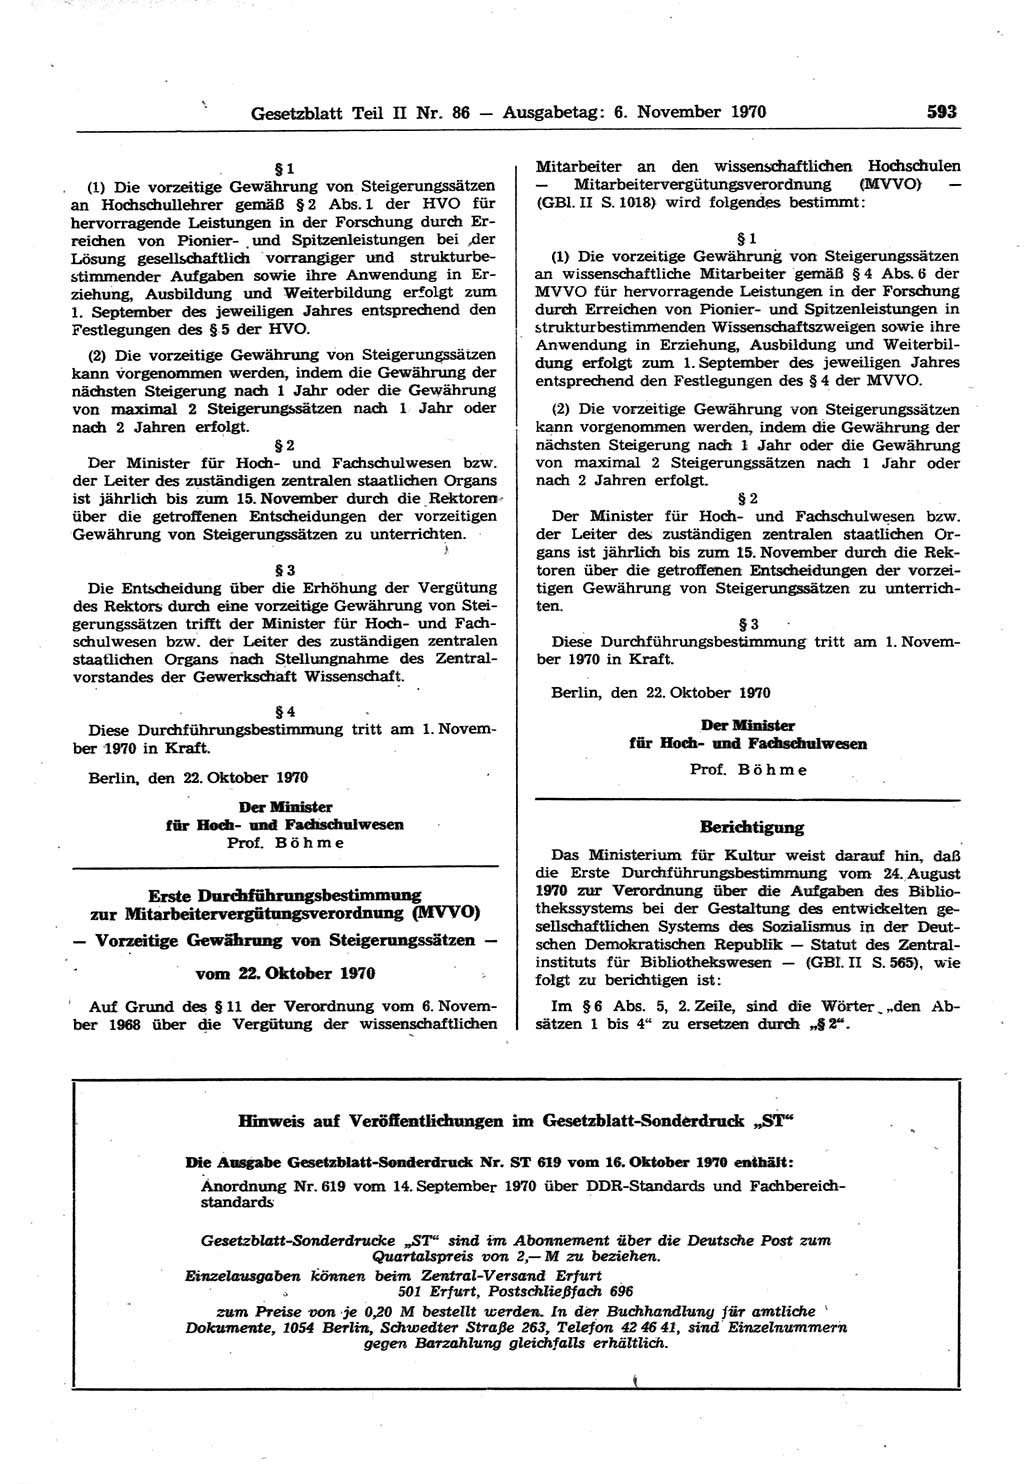 Gesetzblatt (GBl.) der Deutschen Demokratischen Republik (DDR) Teil ⅠⅠ 1970, Seite 593 (GBl. DDR ⅠⅠ 1970, S. 593)